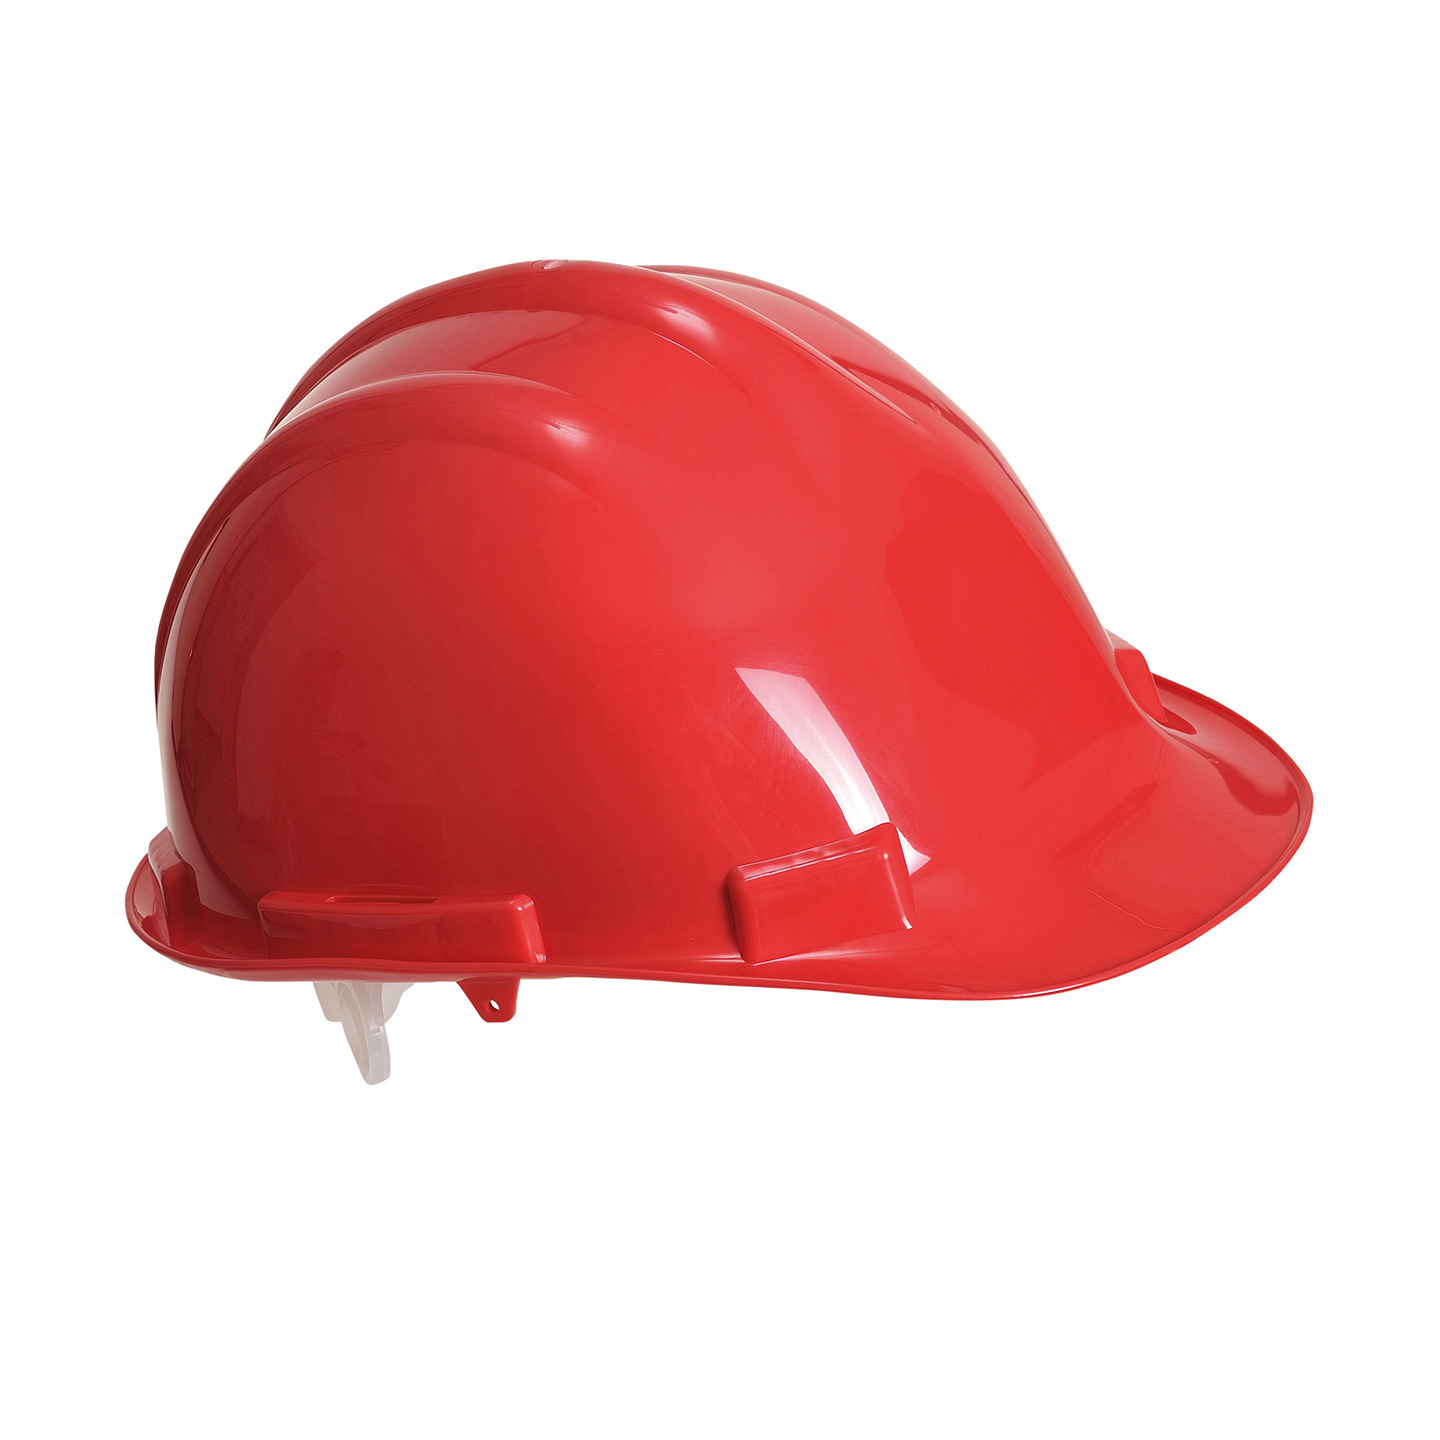 Set van 4x stuks veiligheidshelmen-bouwhelmen hoofdbescherming rood verstelbaar 55-62 cm